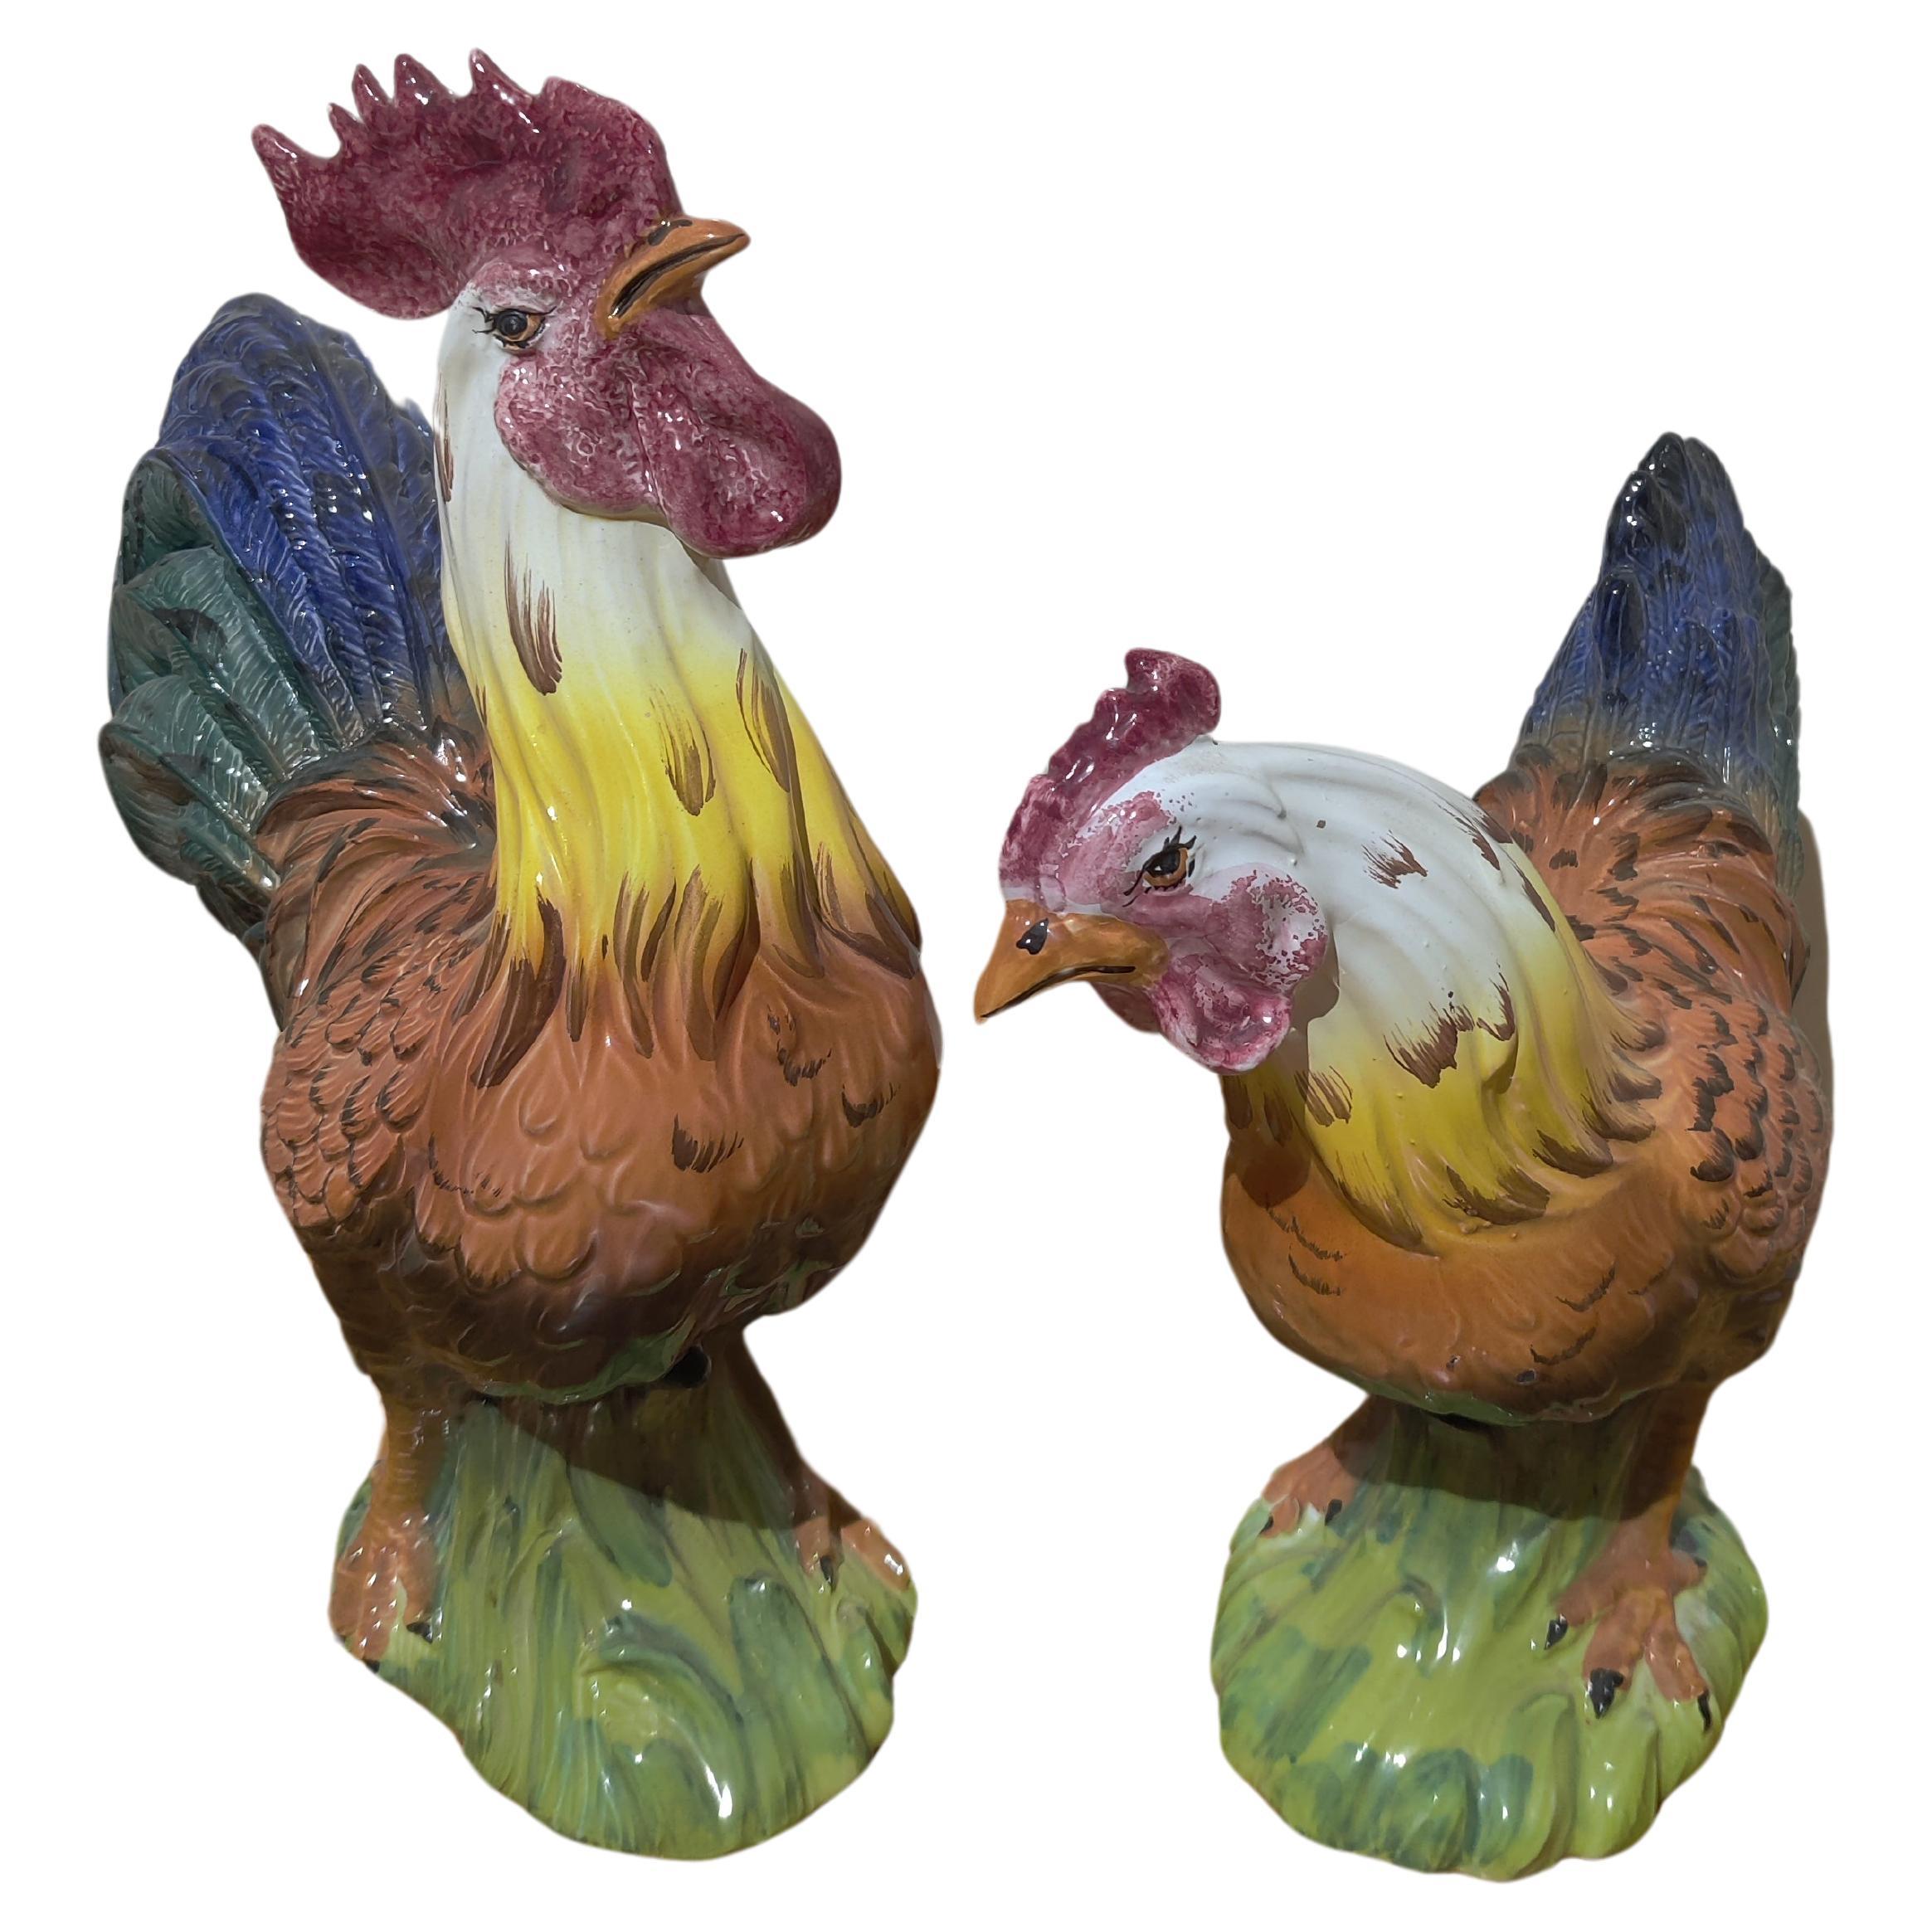 Coq et poule Intrada en céramique fabriqués en Italie